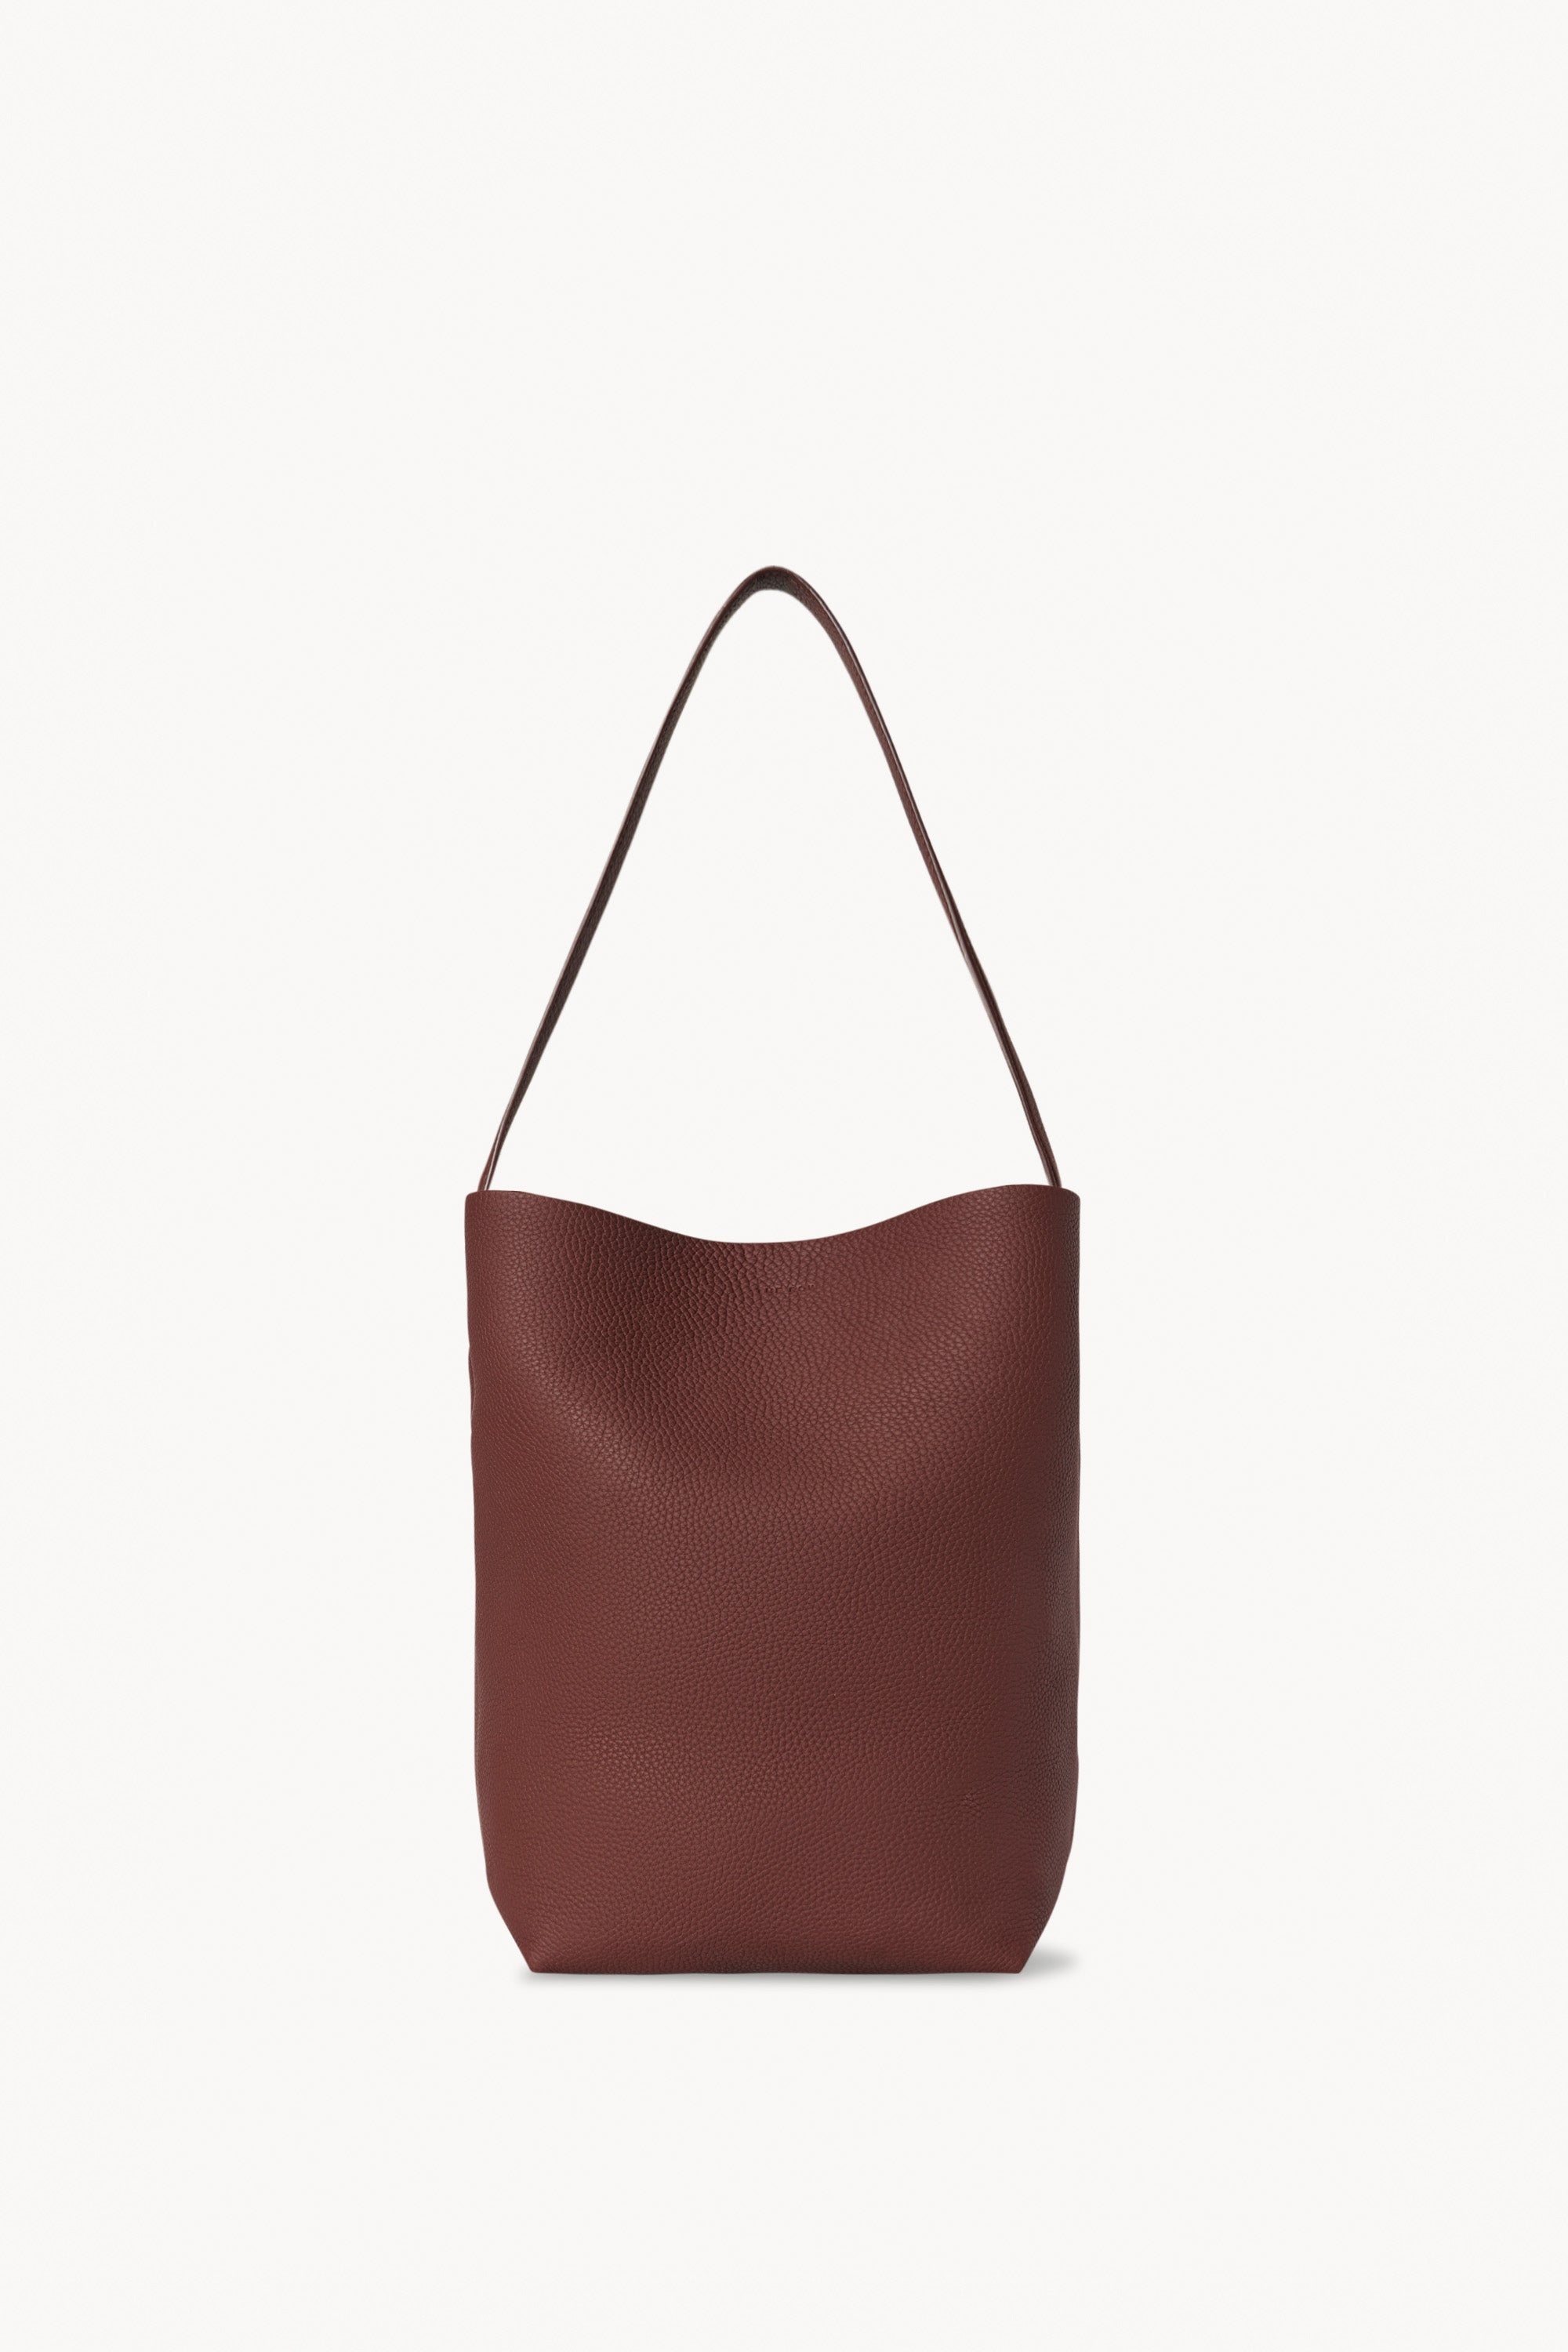 Medium N/S Park Tote Bag in Leather - 1